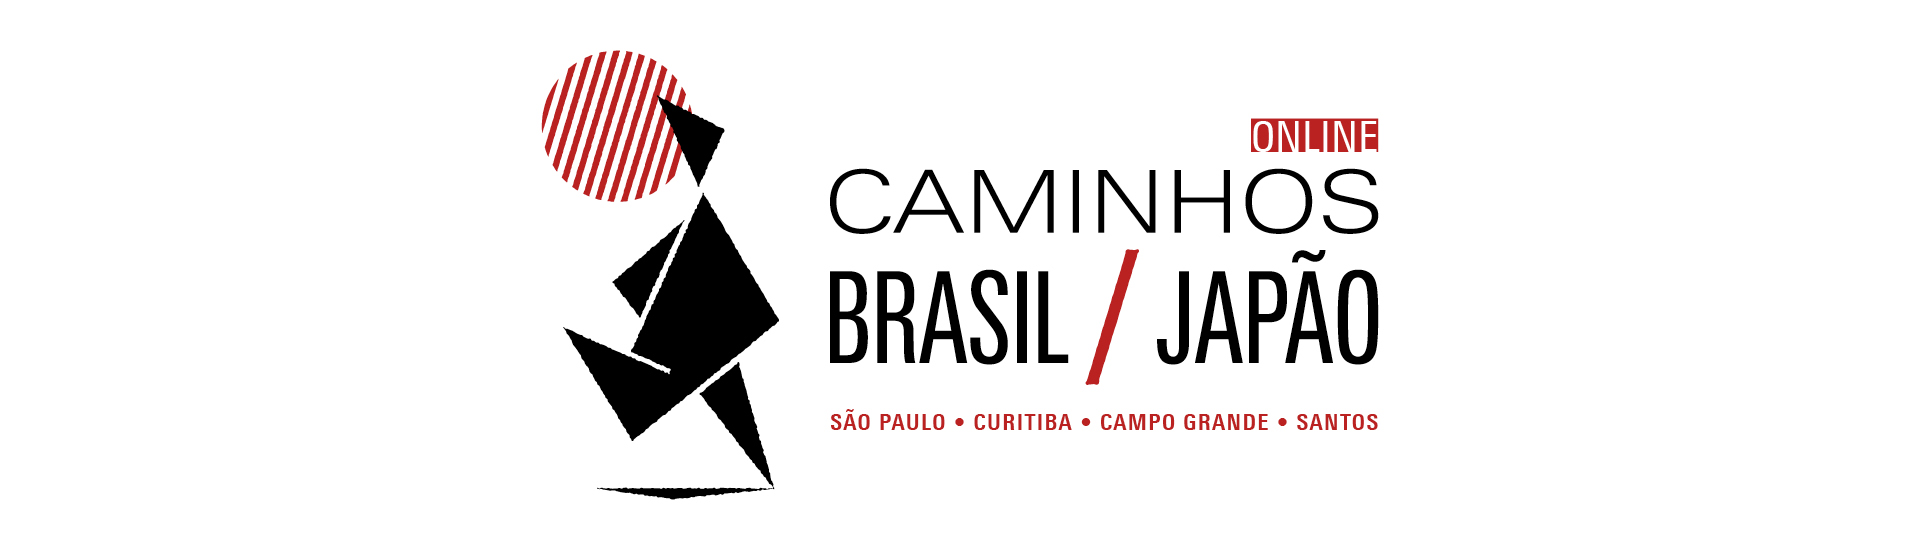 Banner informativo. Caminhos Brasil-Japão ONLINE. São Paulo, Curitiba, Campo Grande, Santos. Ao lado esquerdo do texto, boneco gráfico caminhando, com círculo vermelho atrás simbolizando o sol.